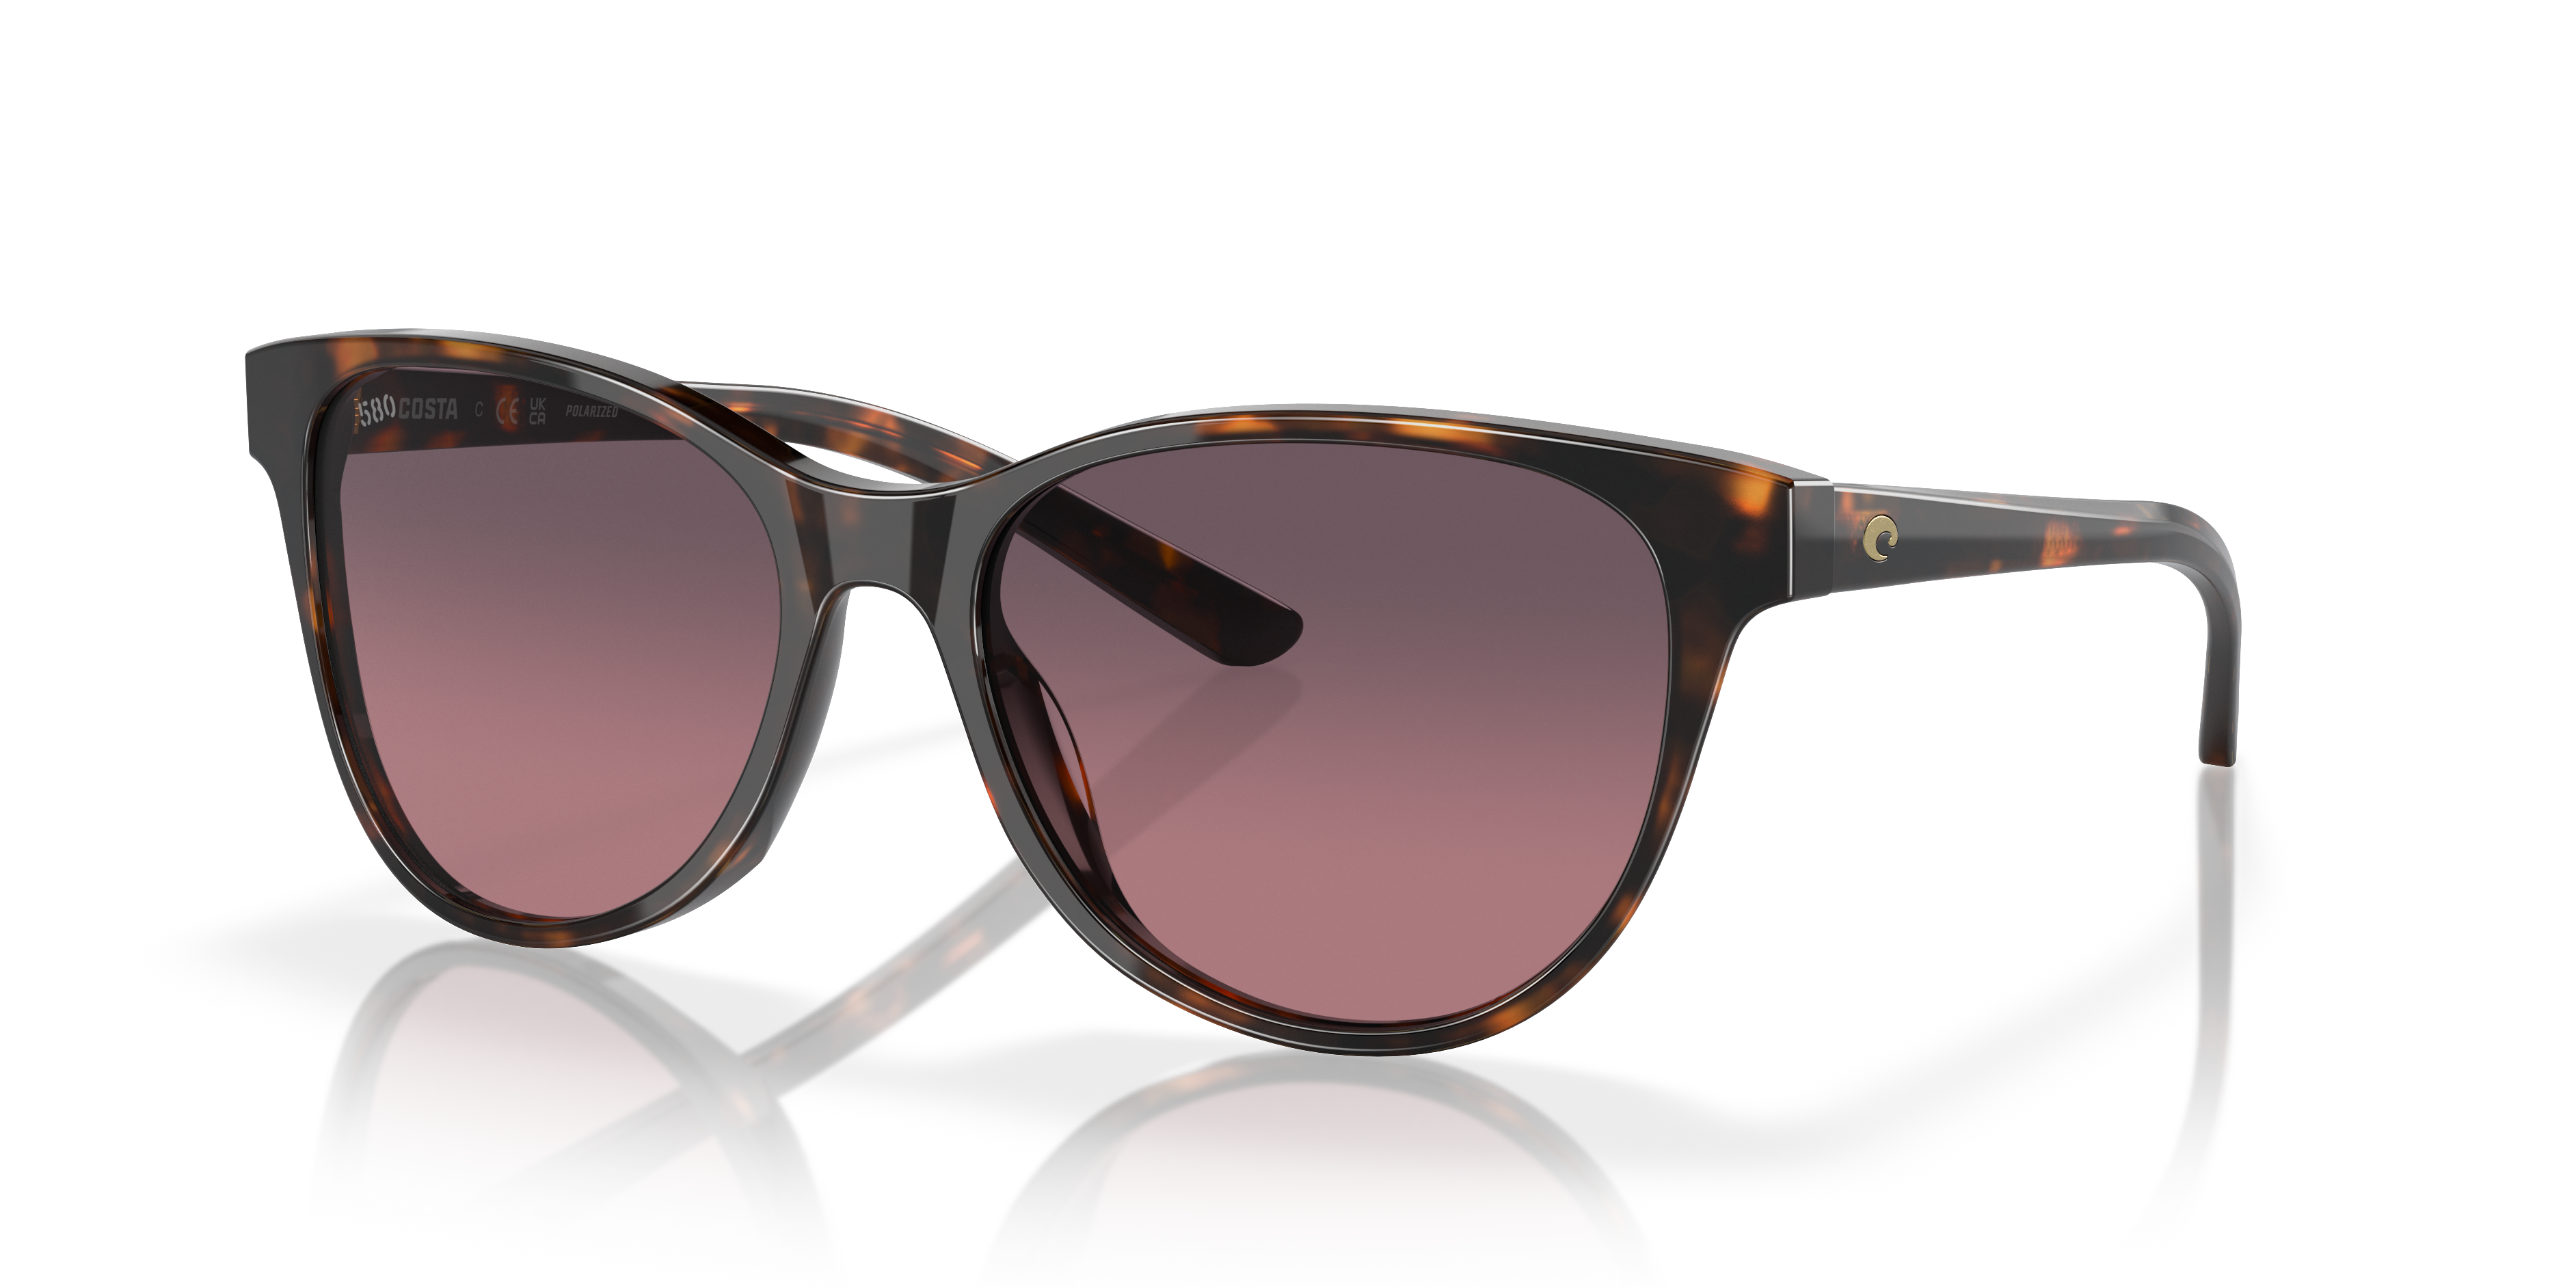 Polarized Sunglasses for Women - Elegant Vision | Shop Maui Jim Sunglasses